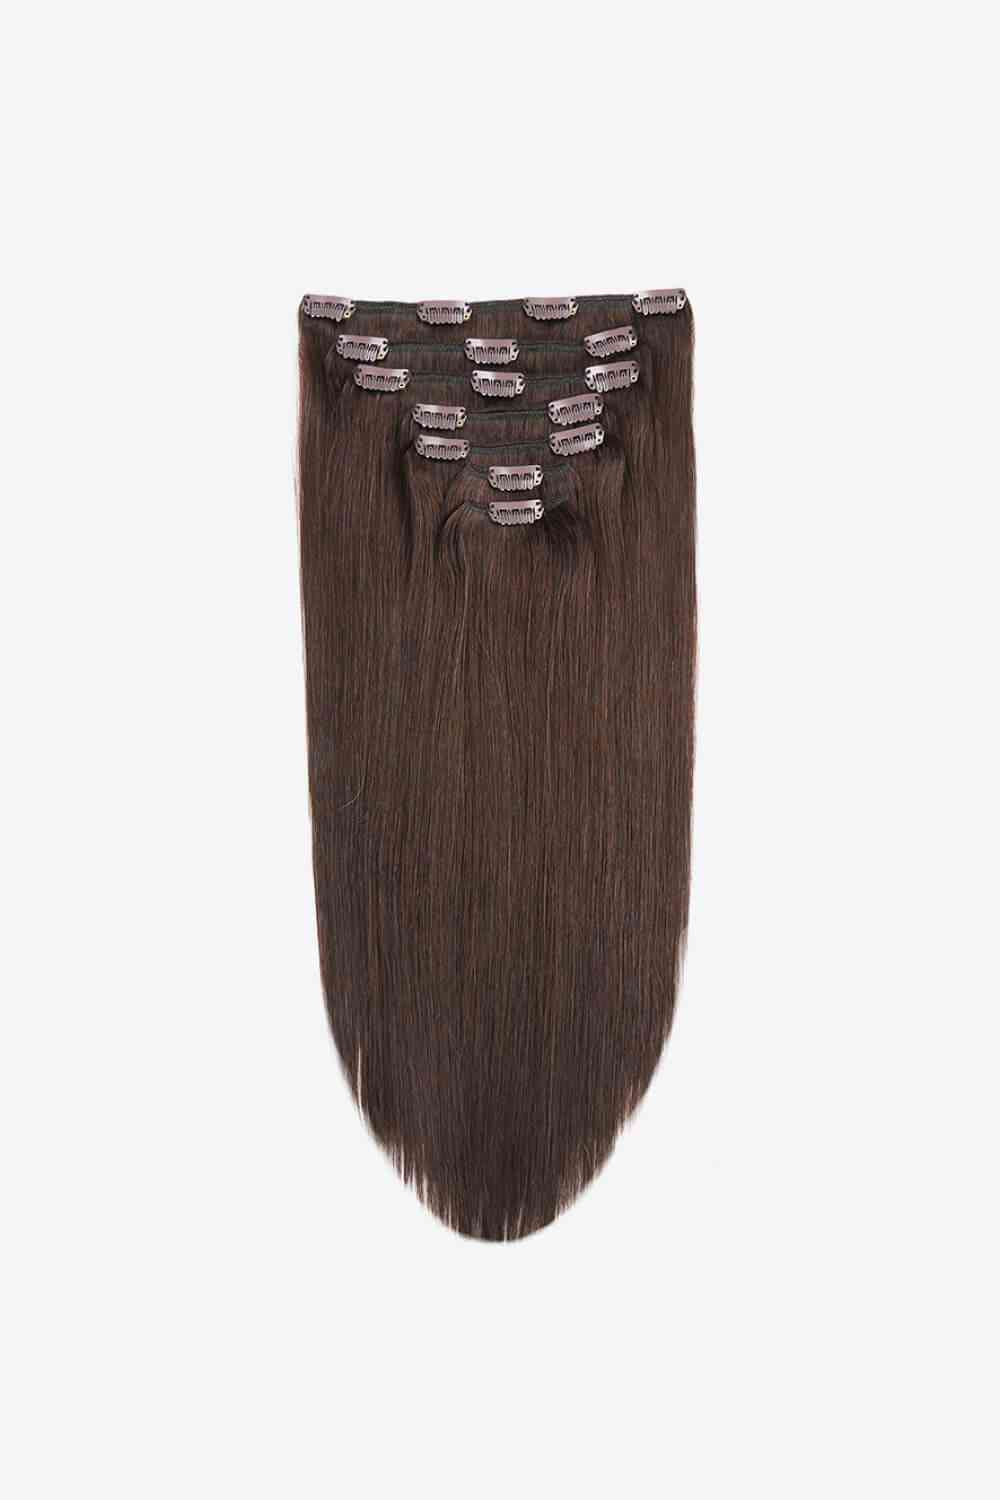 Extensiones de cabello con clip de 18 "y 120 g Cabello humano indio